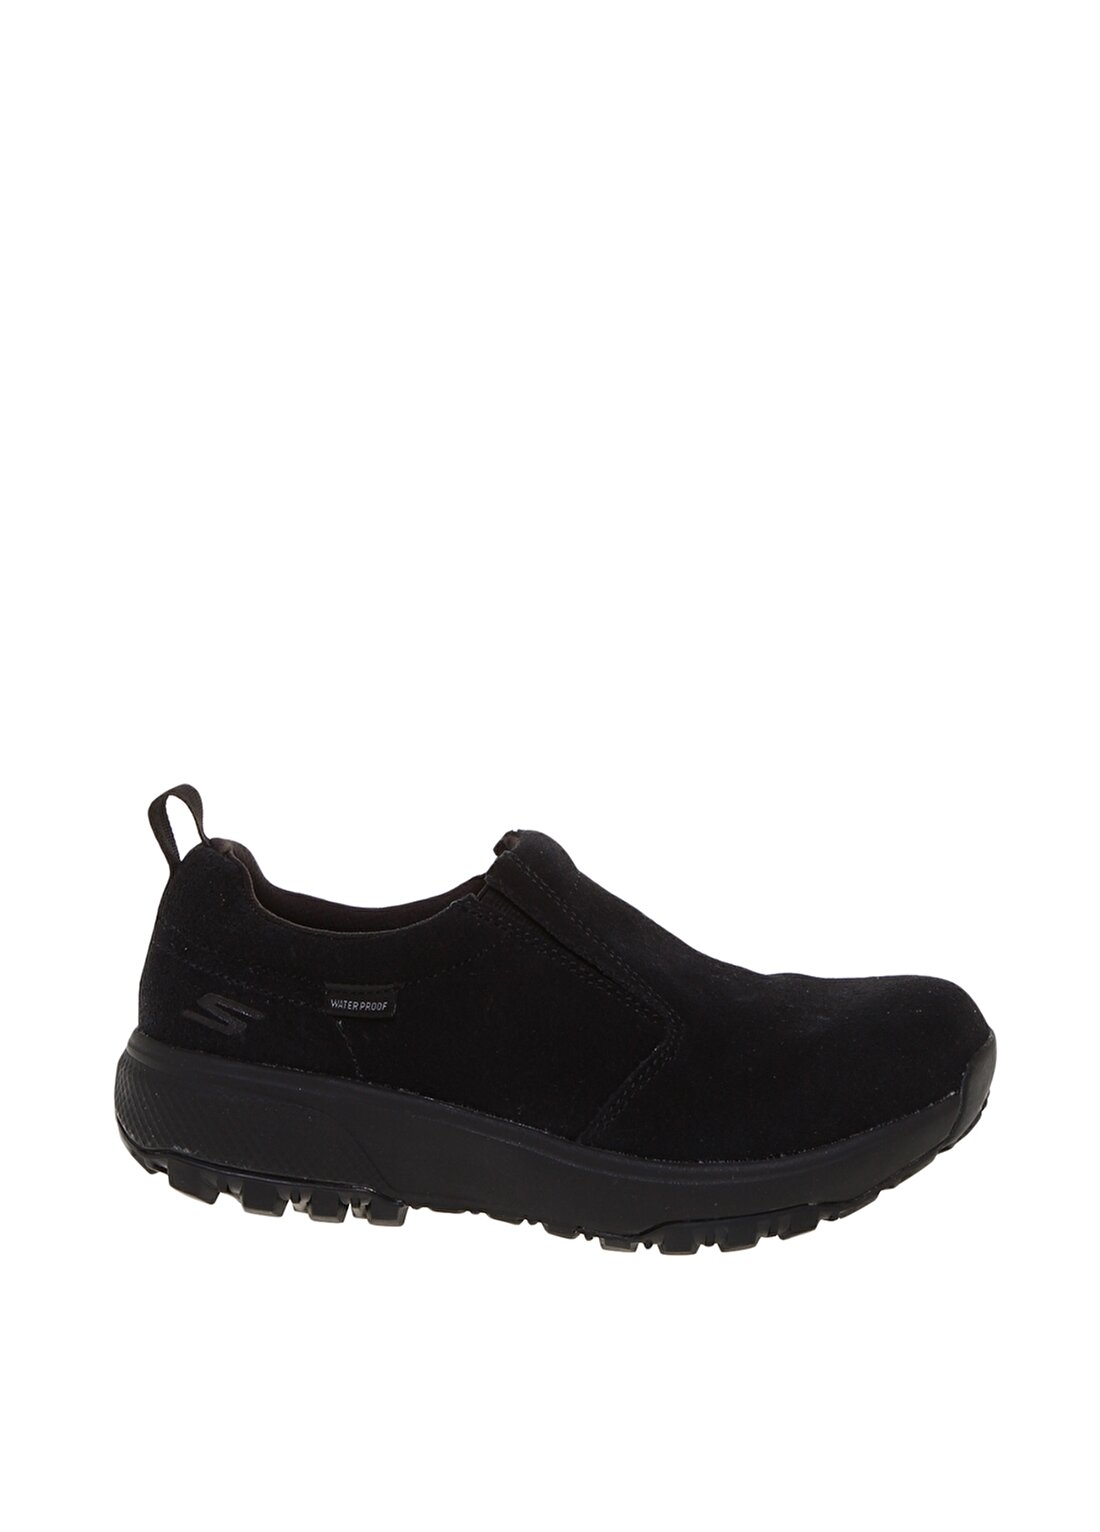 Skechers Waterproof Siyah Yürüyüş Ayakkabısı